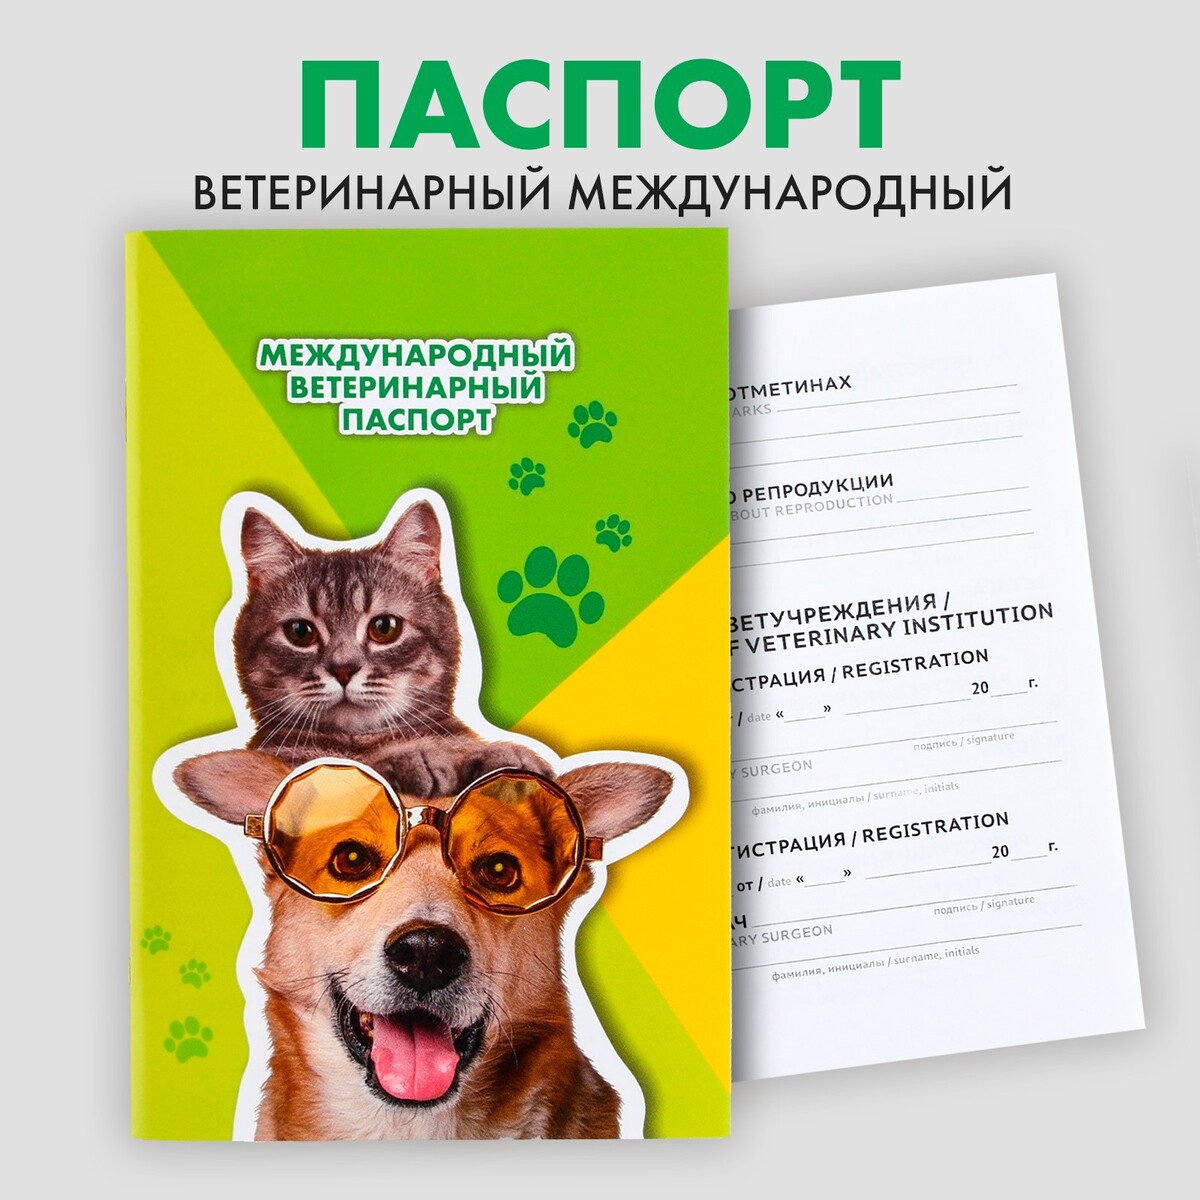 Ветеринарный паспорт международный универсальный ветеринарный паспорт международный универсальный для животных